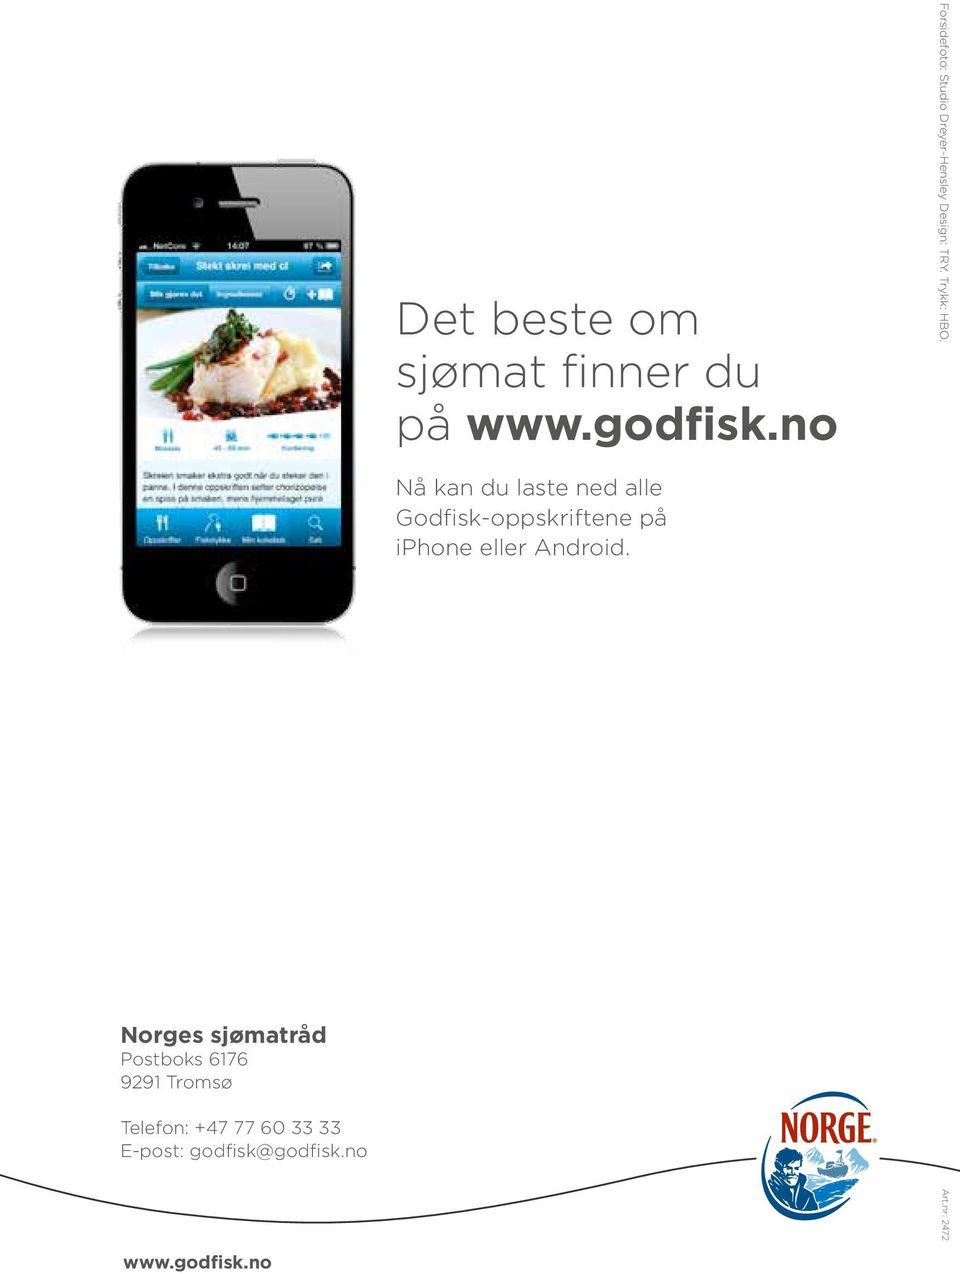 Nå kan du laste ned alle Godfisk-oppskriftene på iphone eller Android.